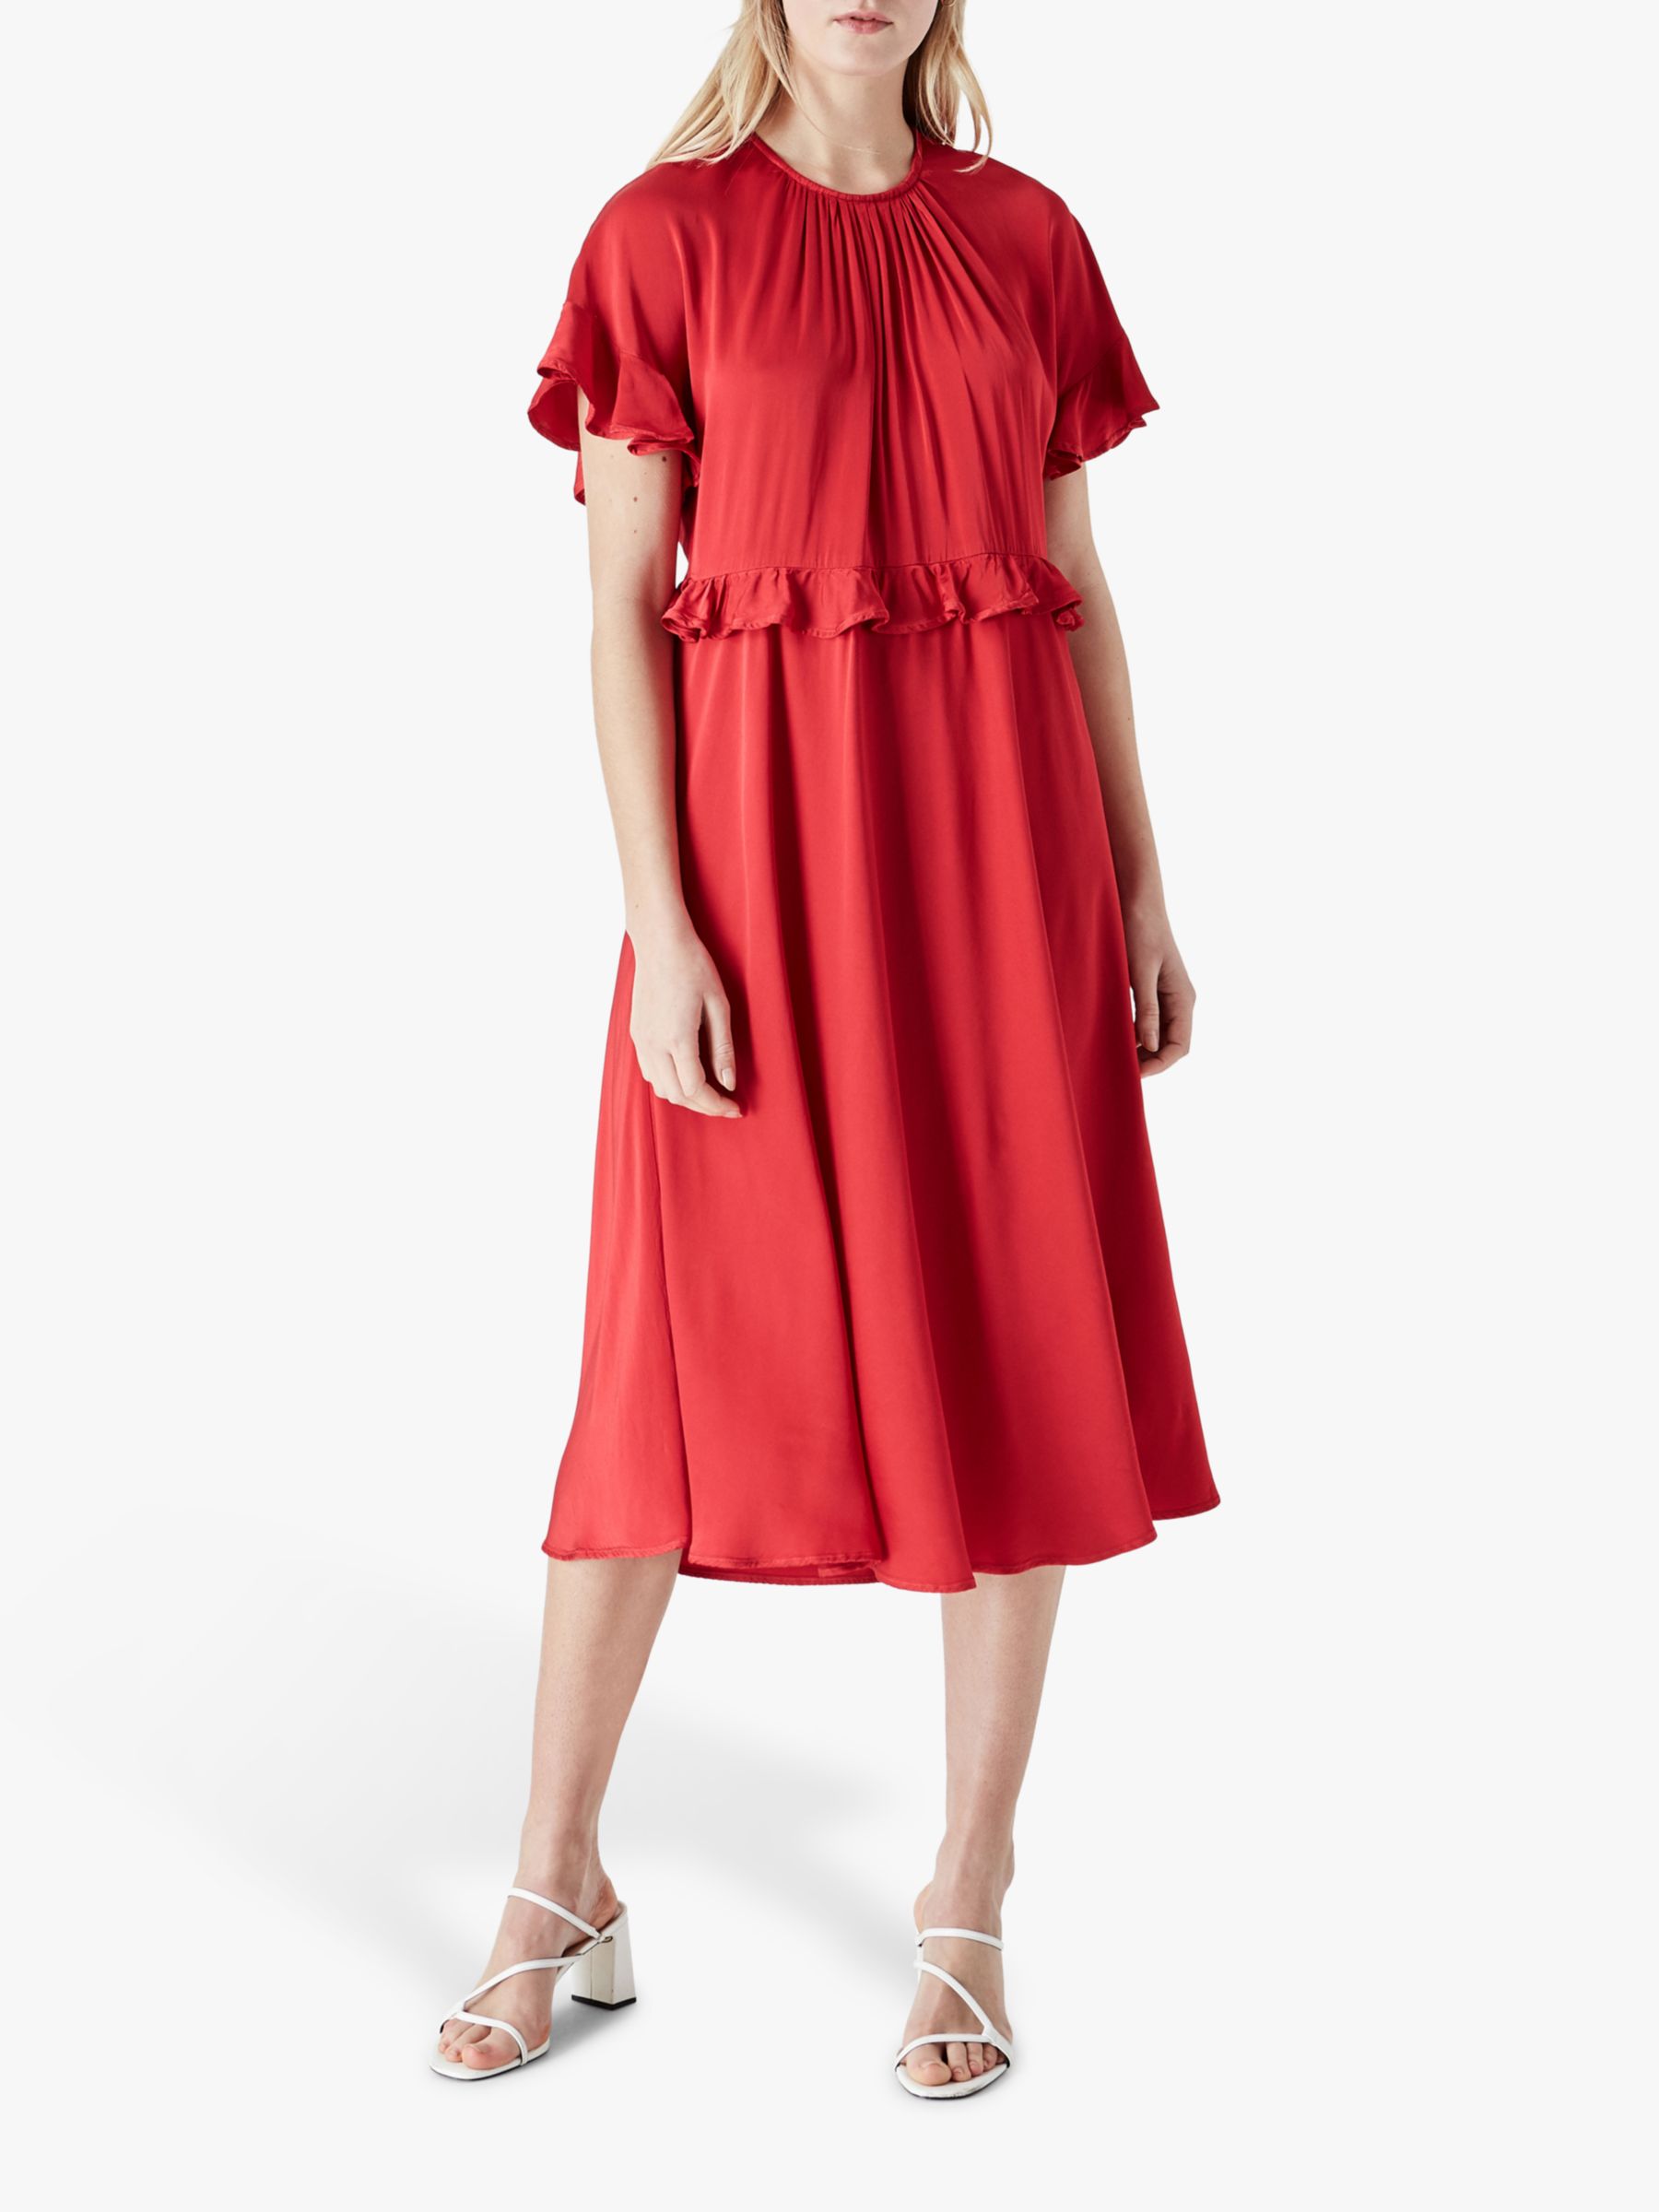 Finery Brenna Frill Midi Dress, Red